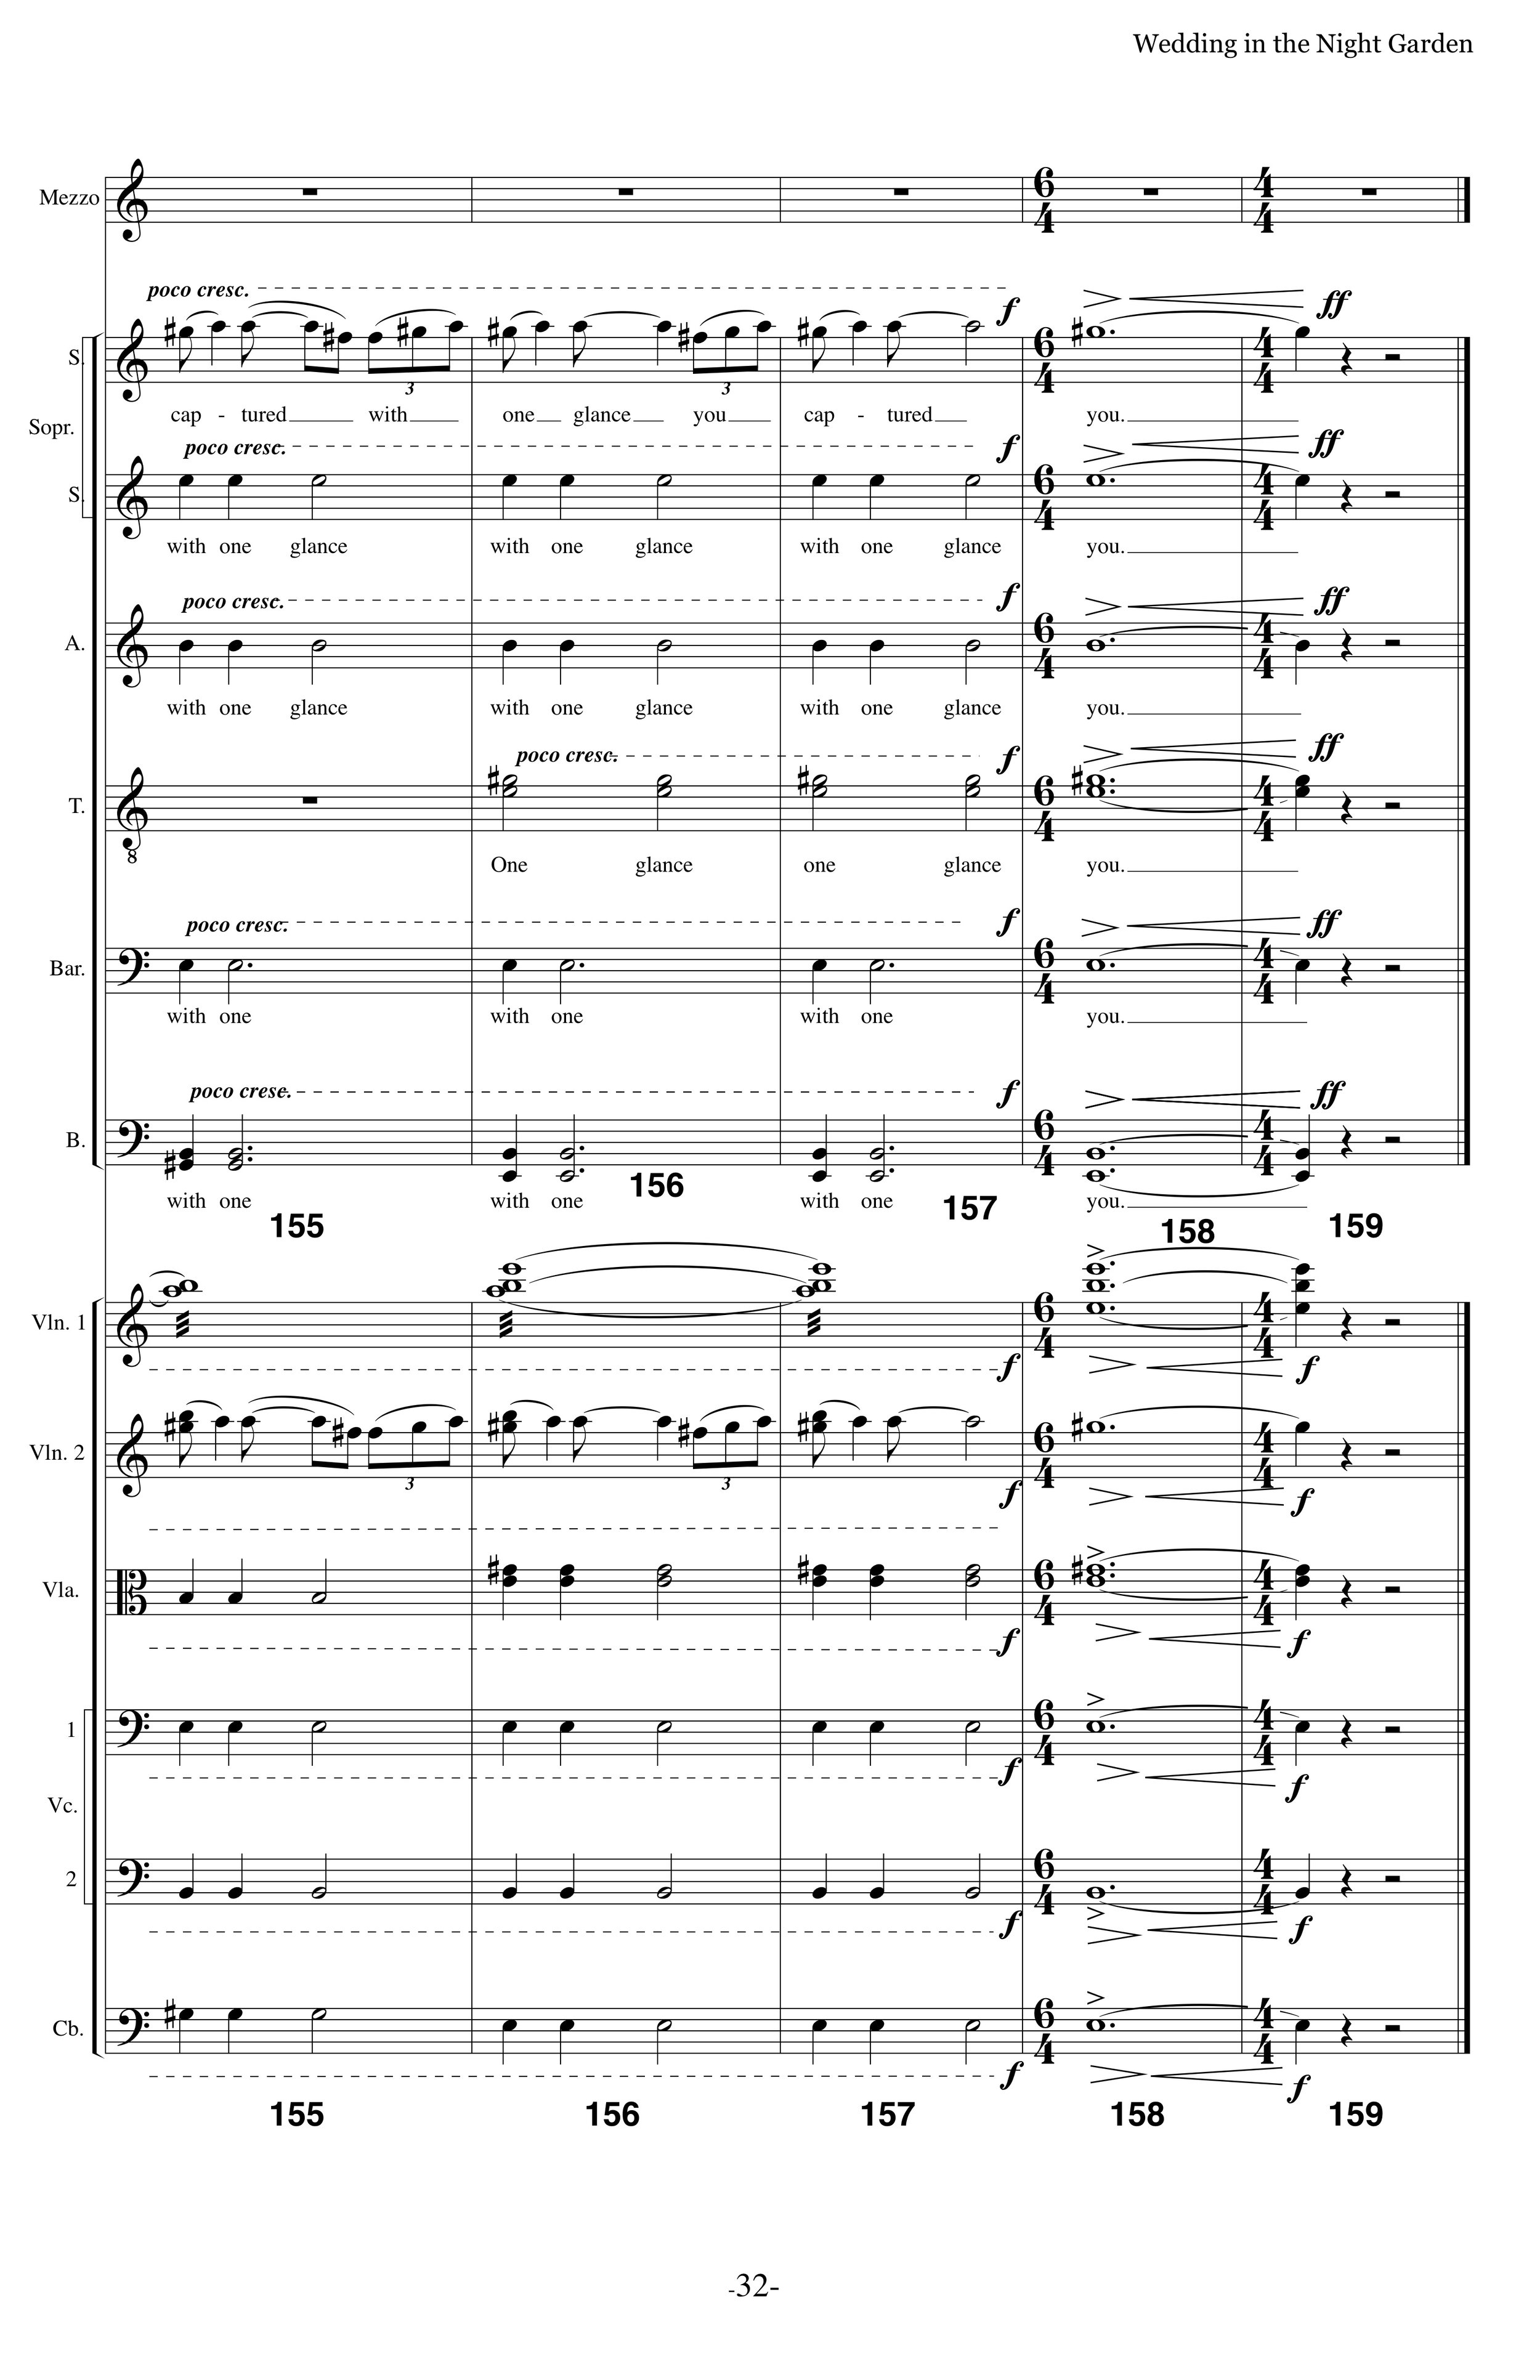 WITNG_MS Strings Choir p32.jpg